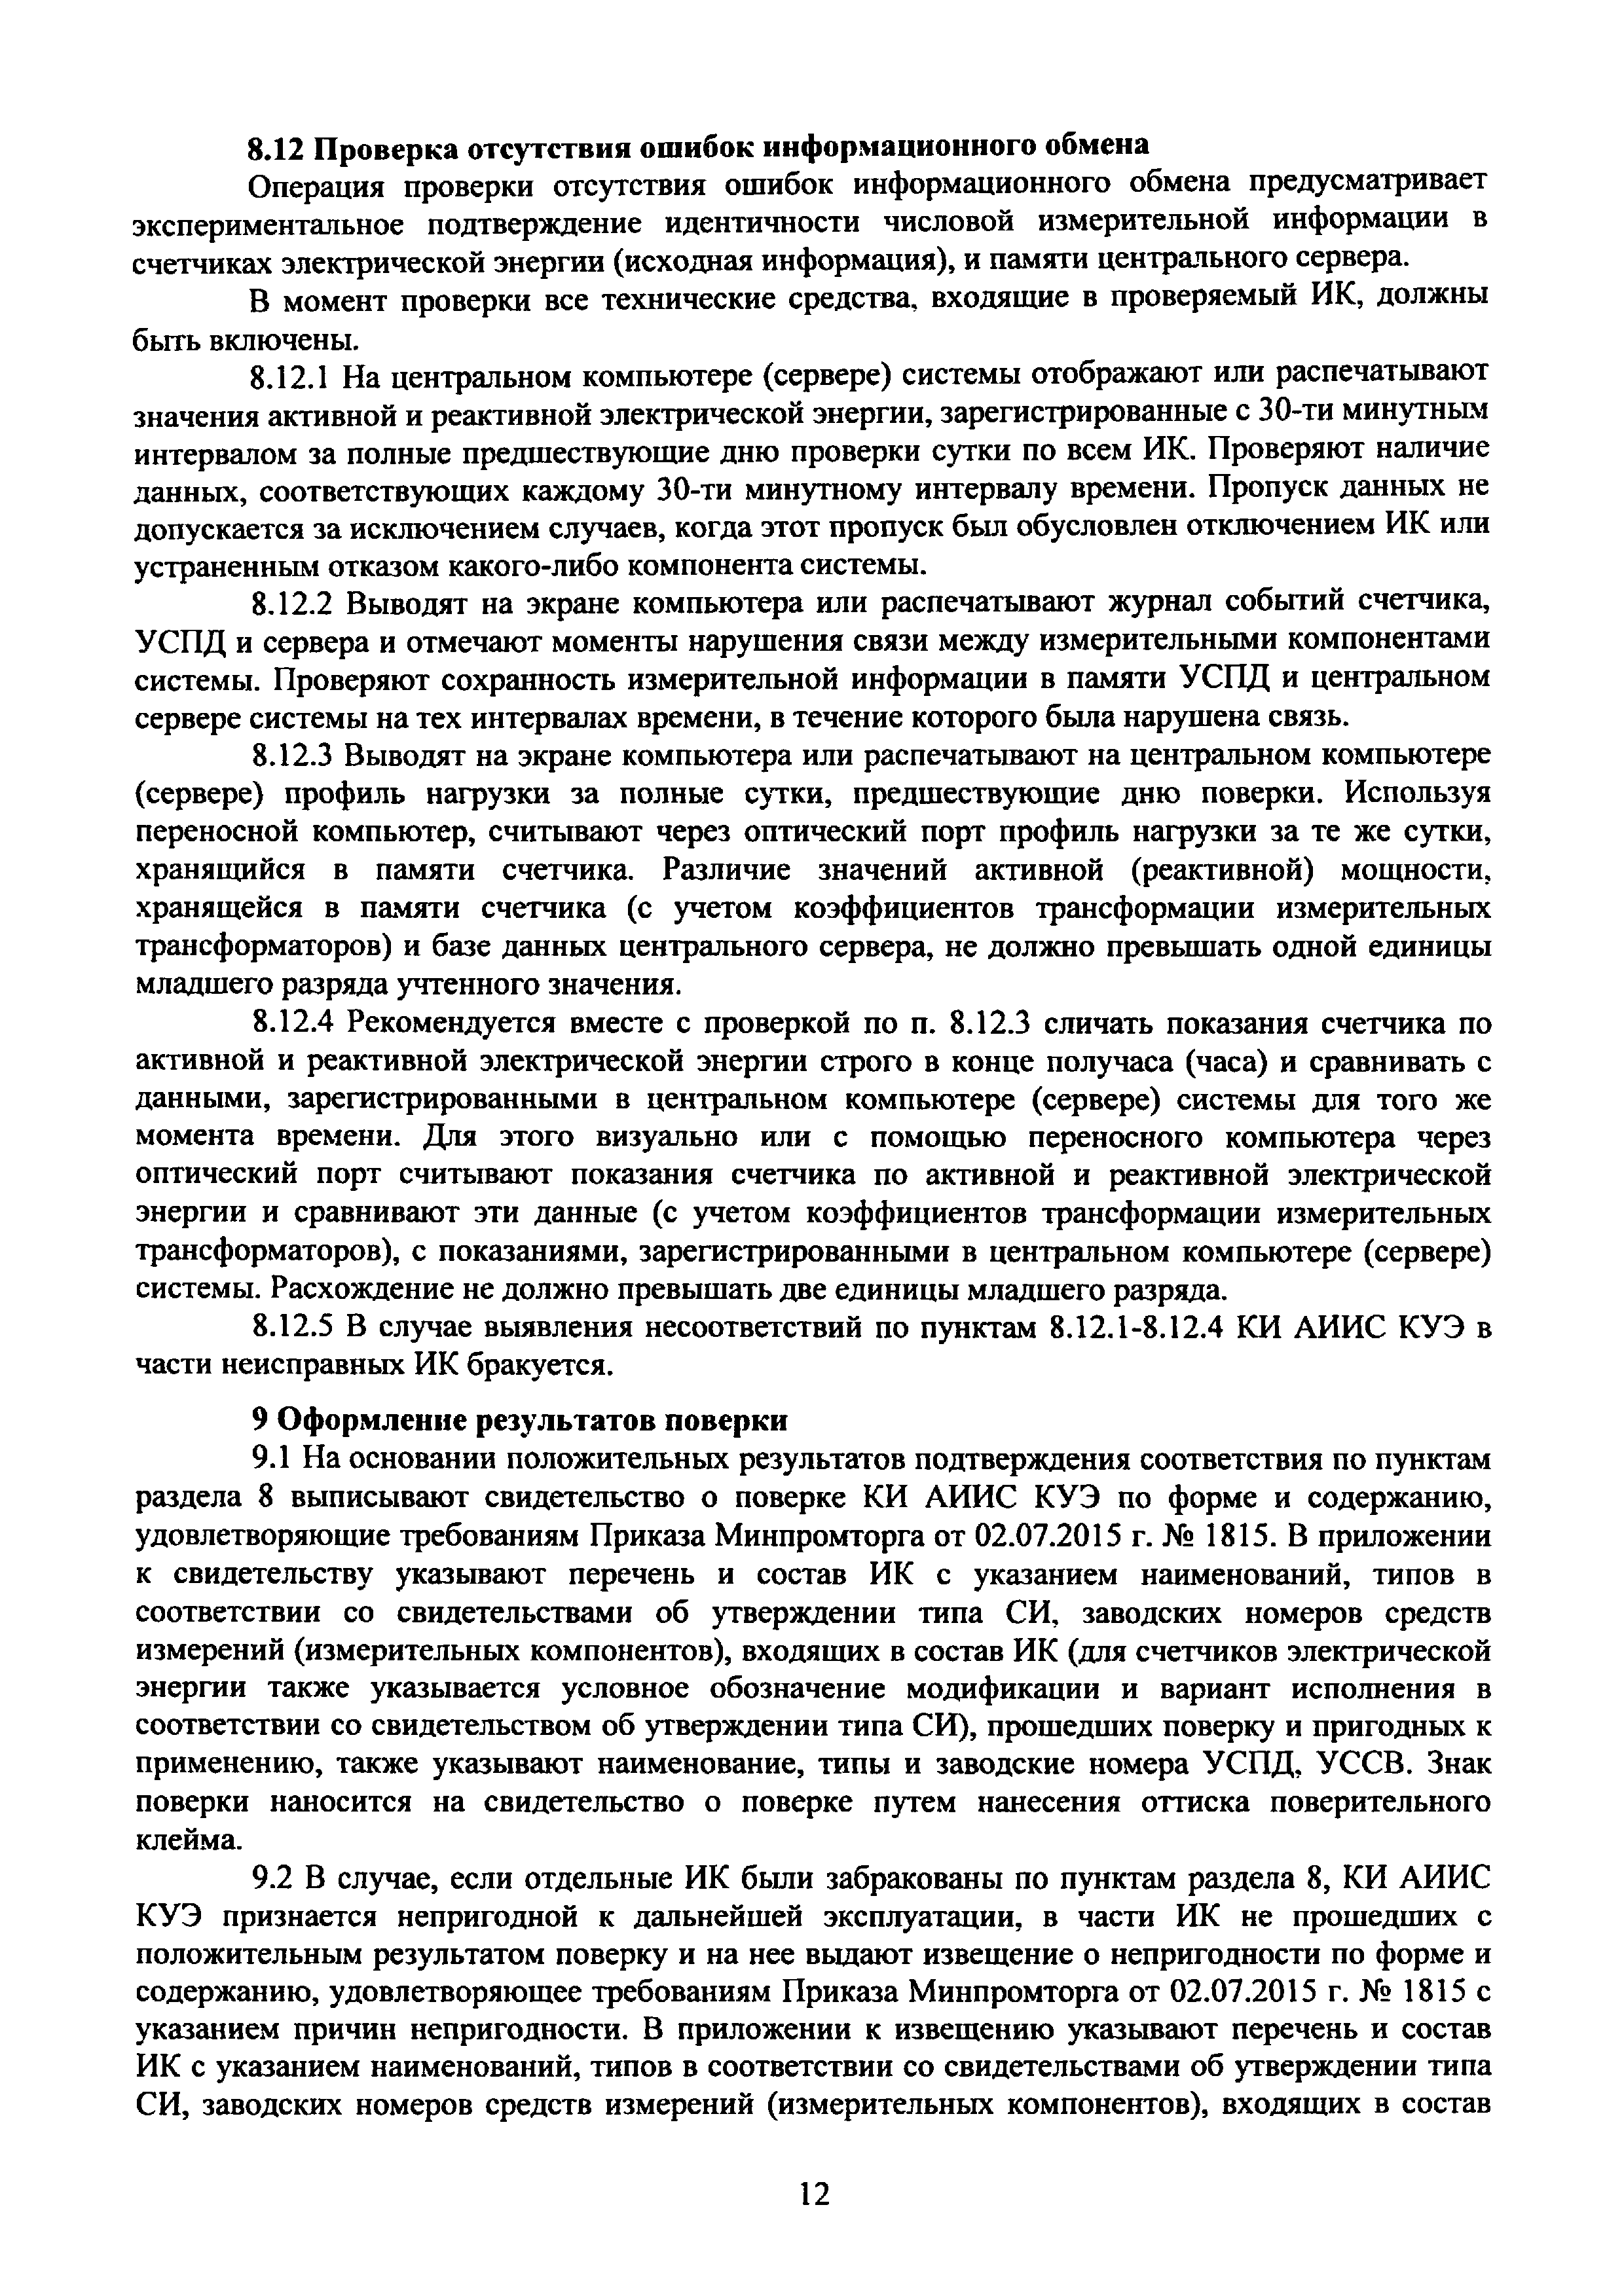 МП КЦСМ-186-2019